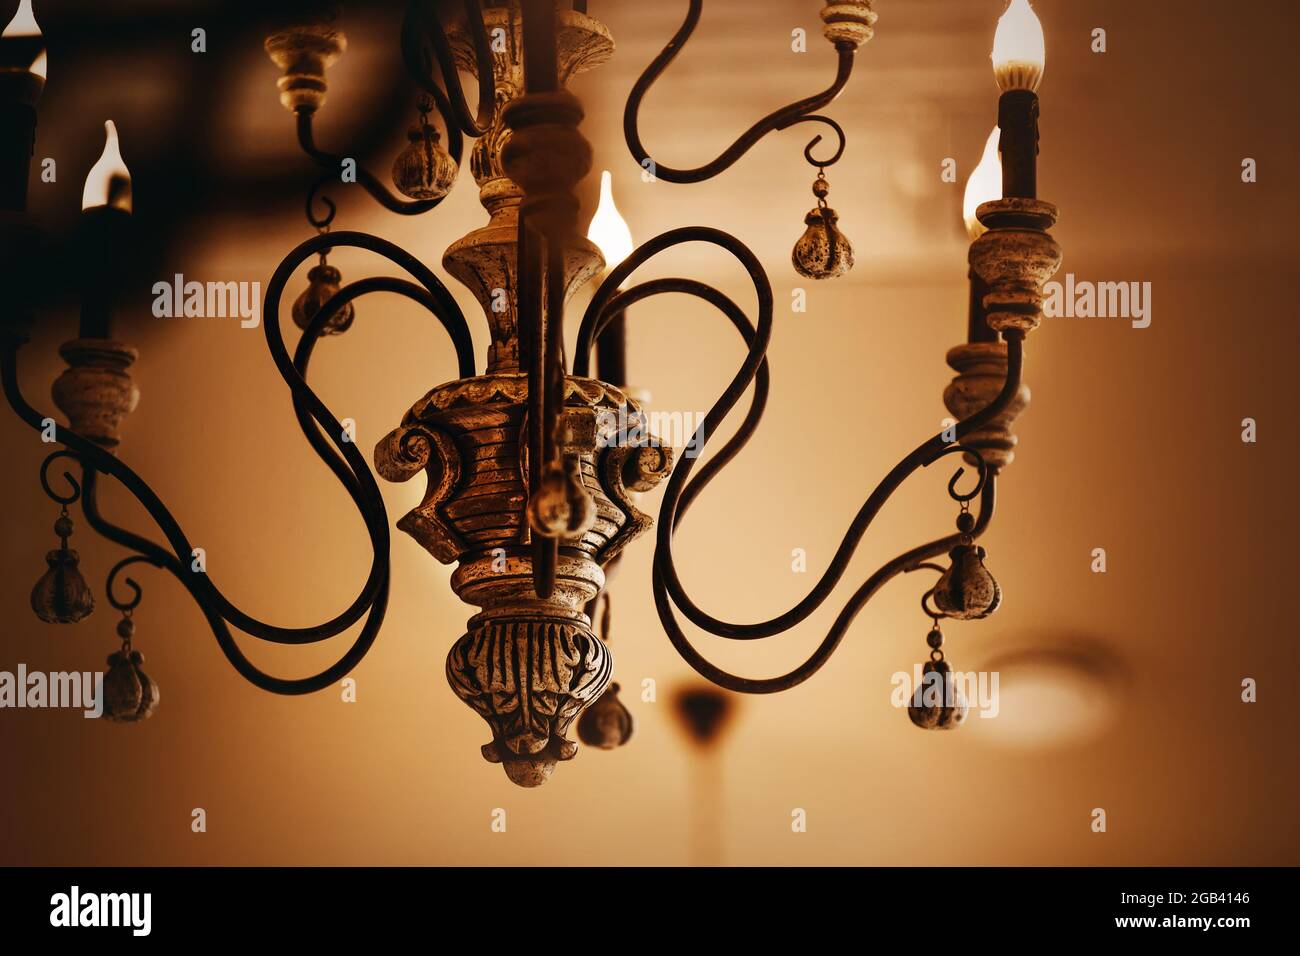 Un vieux lustre élégant et riche avec bougies électriques en chandeliers brille la nuit. Richesse et beauté. Banque D'Images